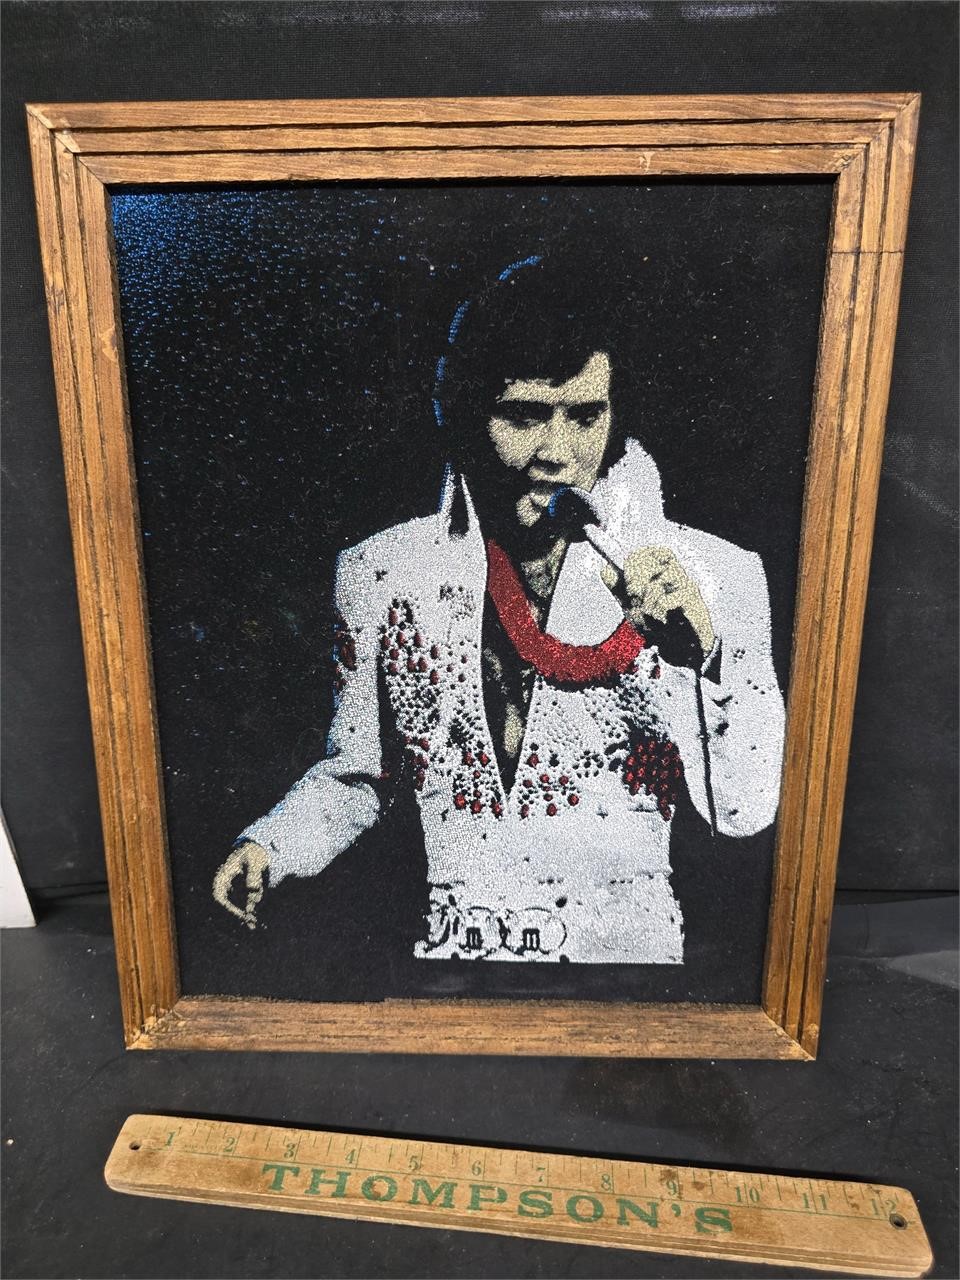 Elvis Presley art on velvet